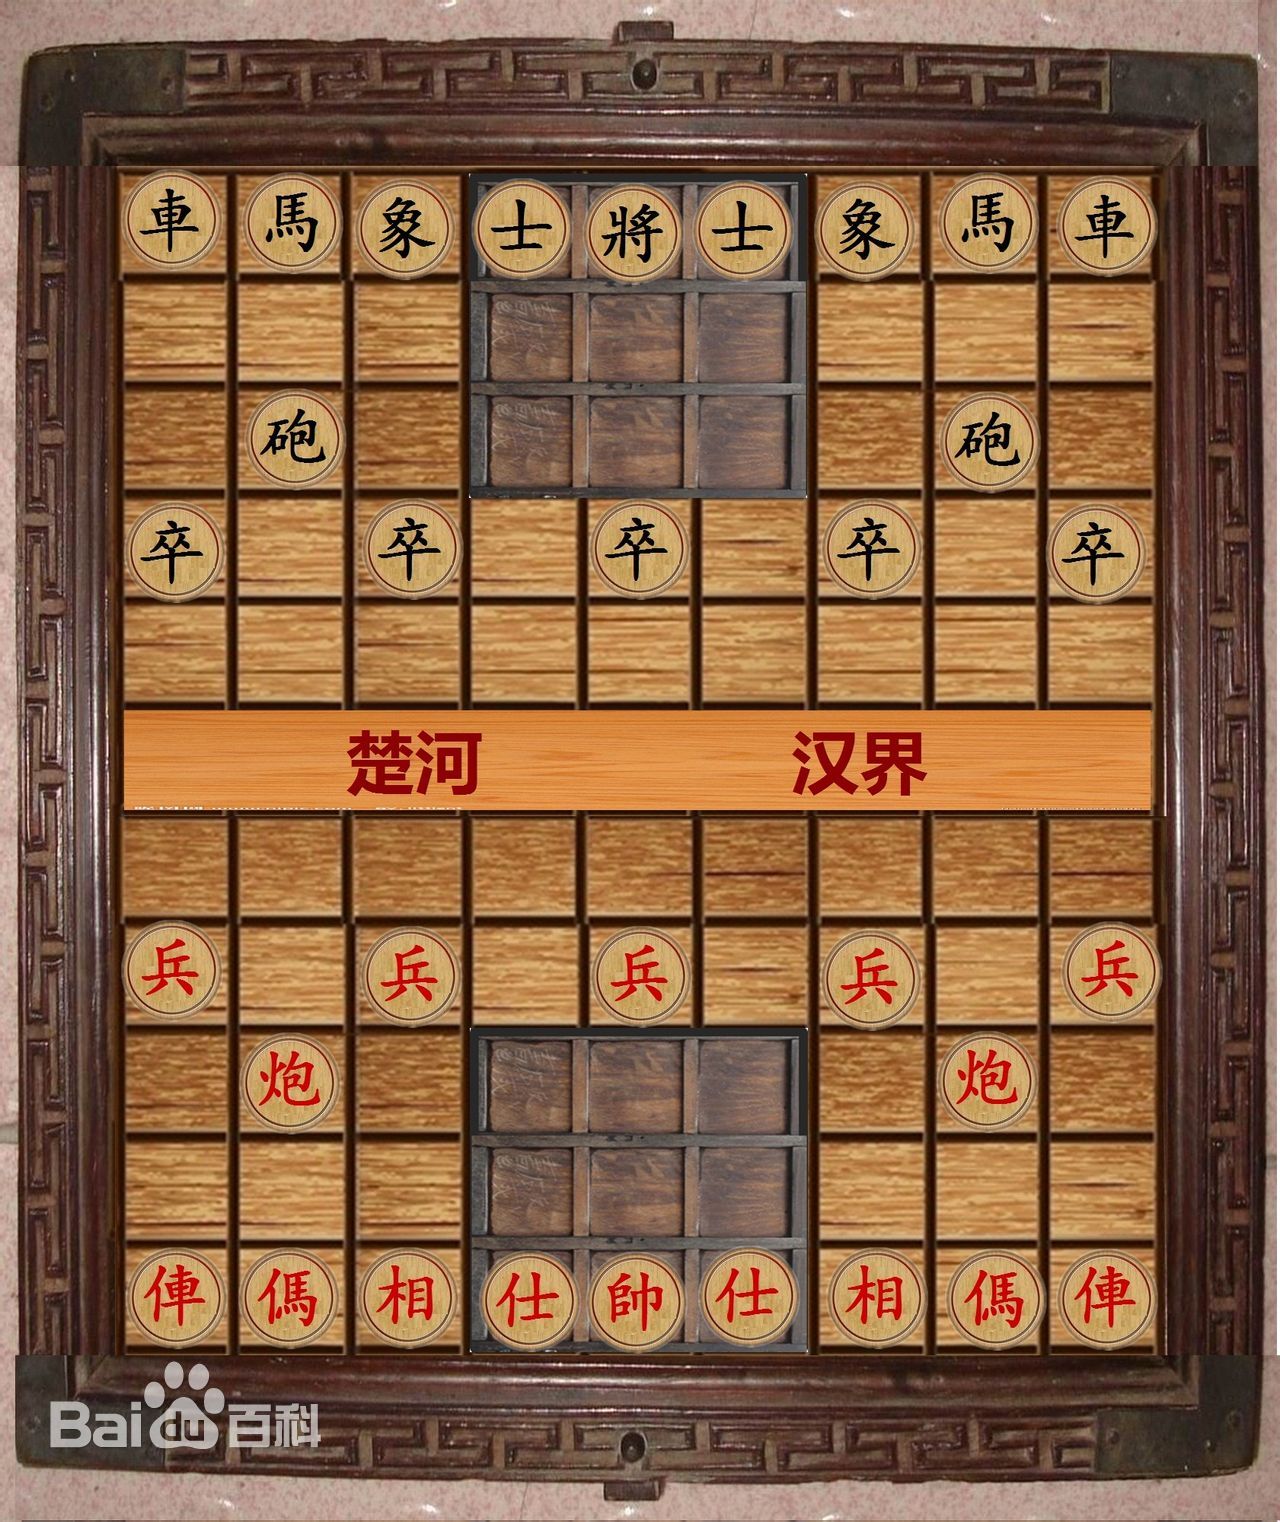 象棋qí摆放fàng图片如下首先摆放fàng九宫gōng格正中间位置zhì